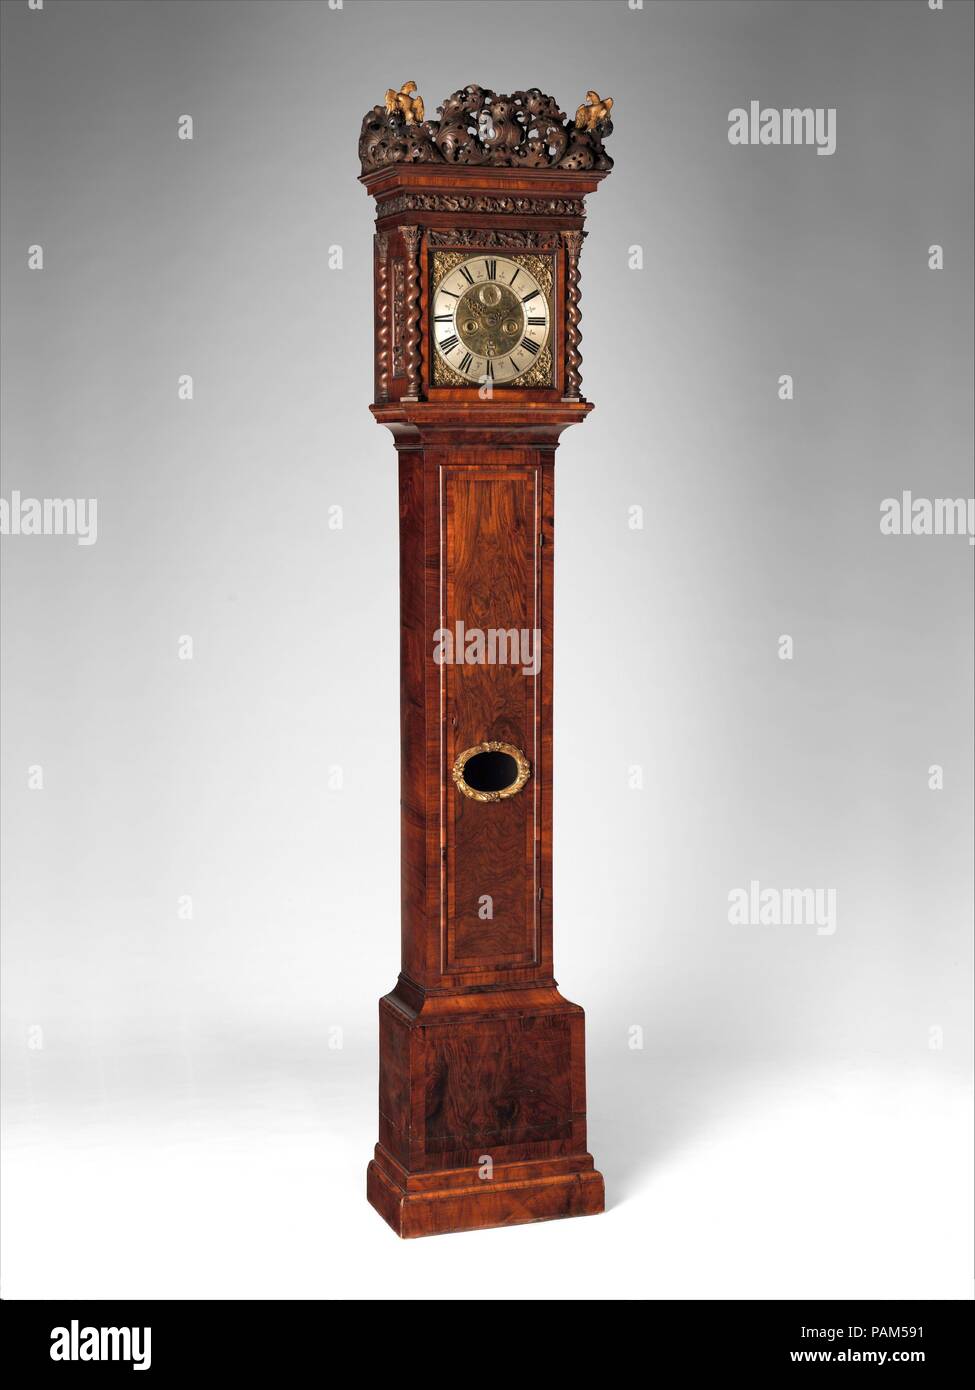 Longcase orologio con calendario e allarme. Cultura: Olandese, Amsterdam.  Dimensioni: complessivo: 88 × 19 1/4 × 10 7/8 in. (223,5 × 48,9 × 27,6 cm);  Larghezza (quadrante): 10 1/2 in. (26,7 cm).